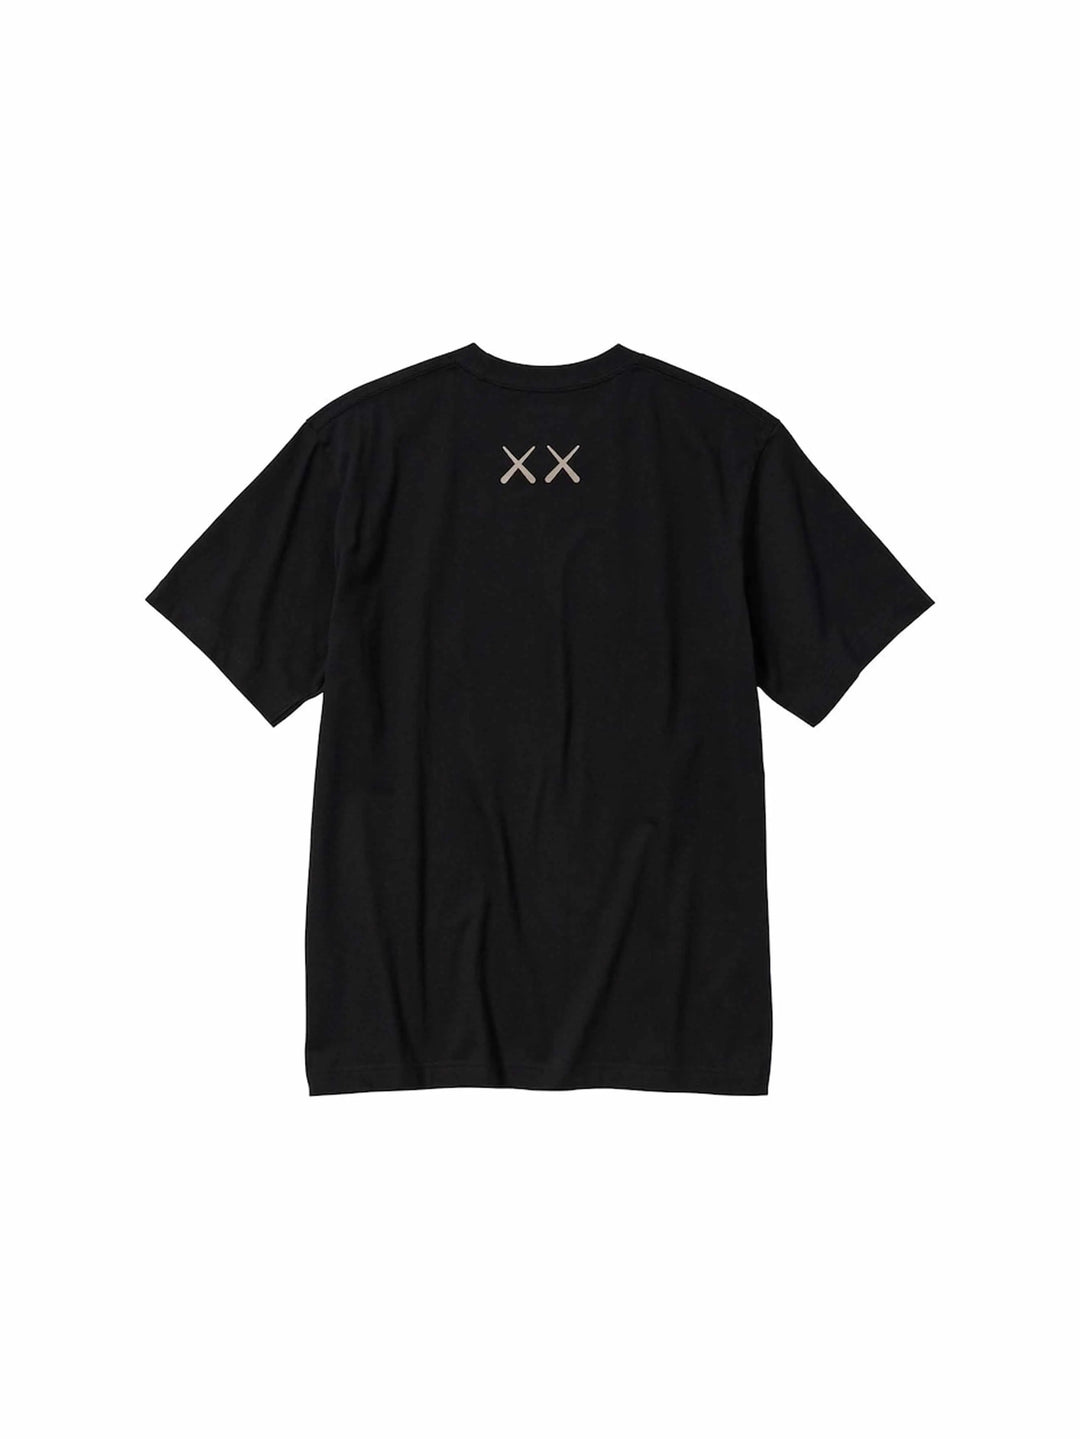 KAWS x Uniqlo UT Short Sleeve Graphic T-shirt Black Prior